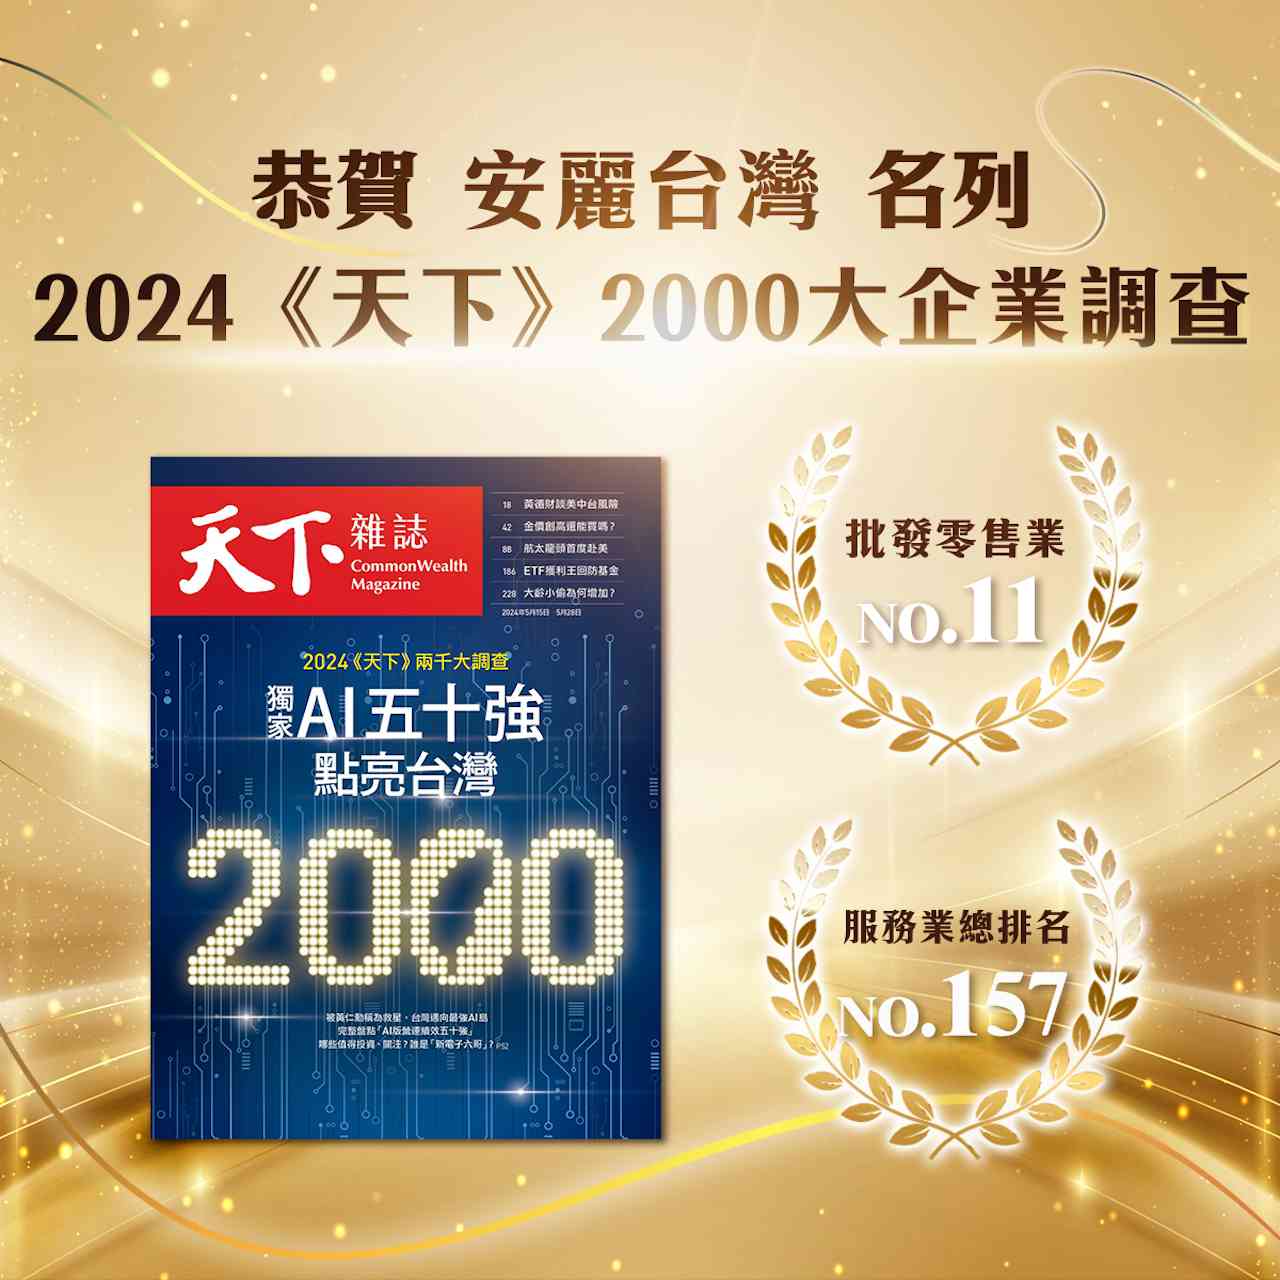 安麗台灣名列「天下 2000 大企業調查」 用心推廣全民健康幸福